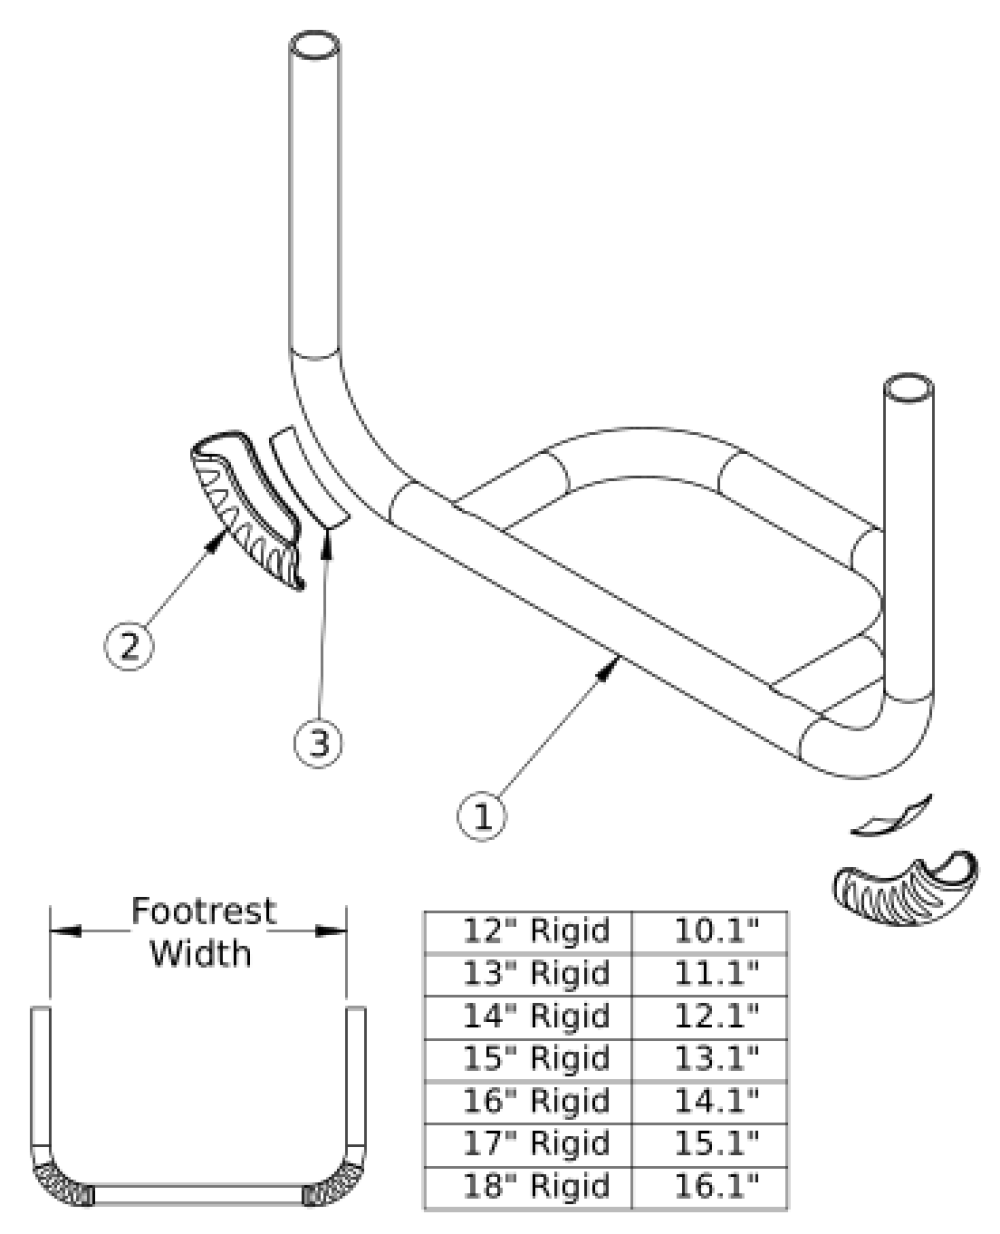 Rogue Xp Tubular Open Footrest parts diagram